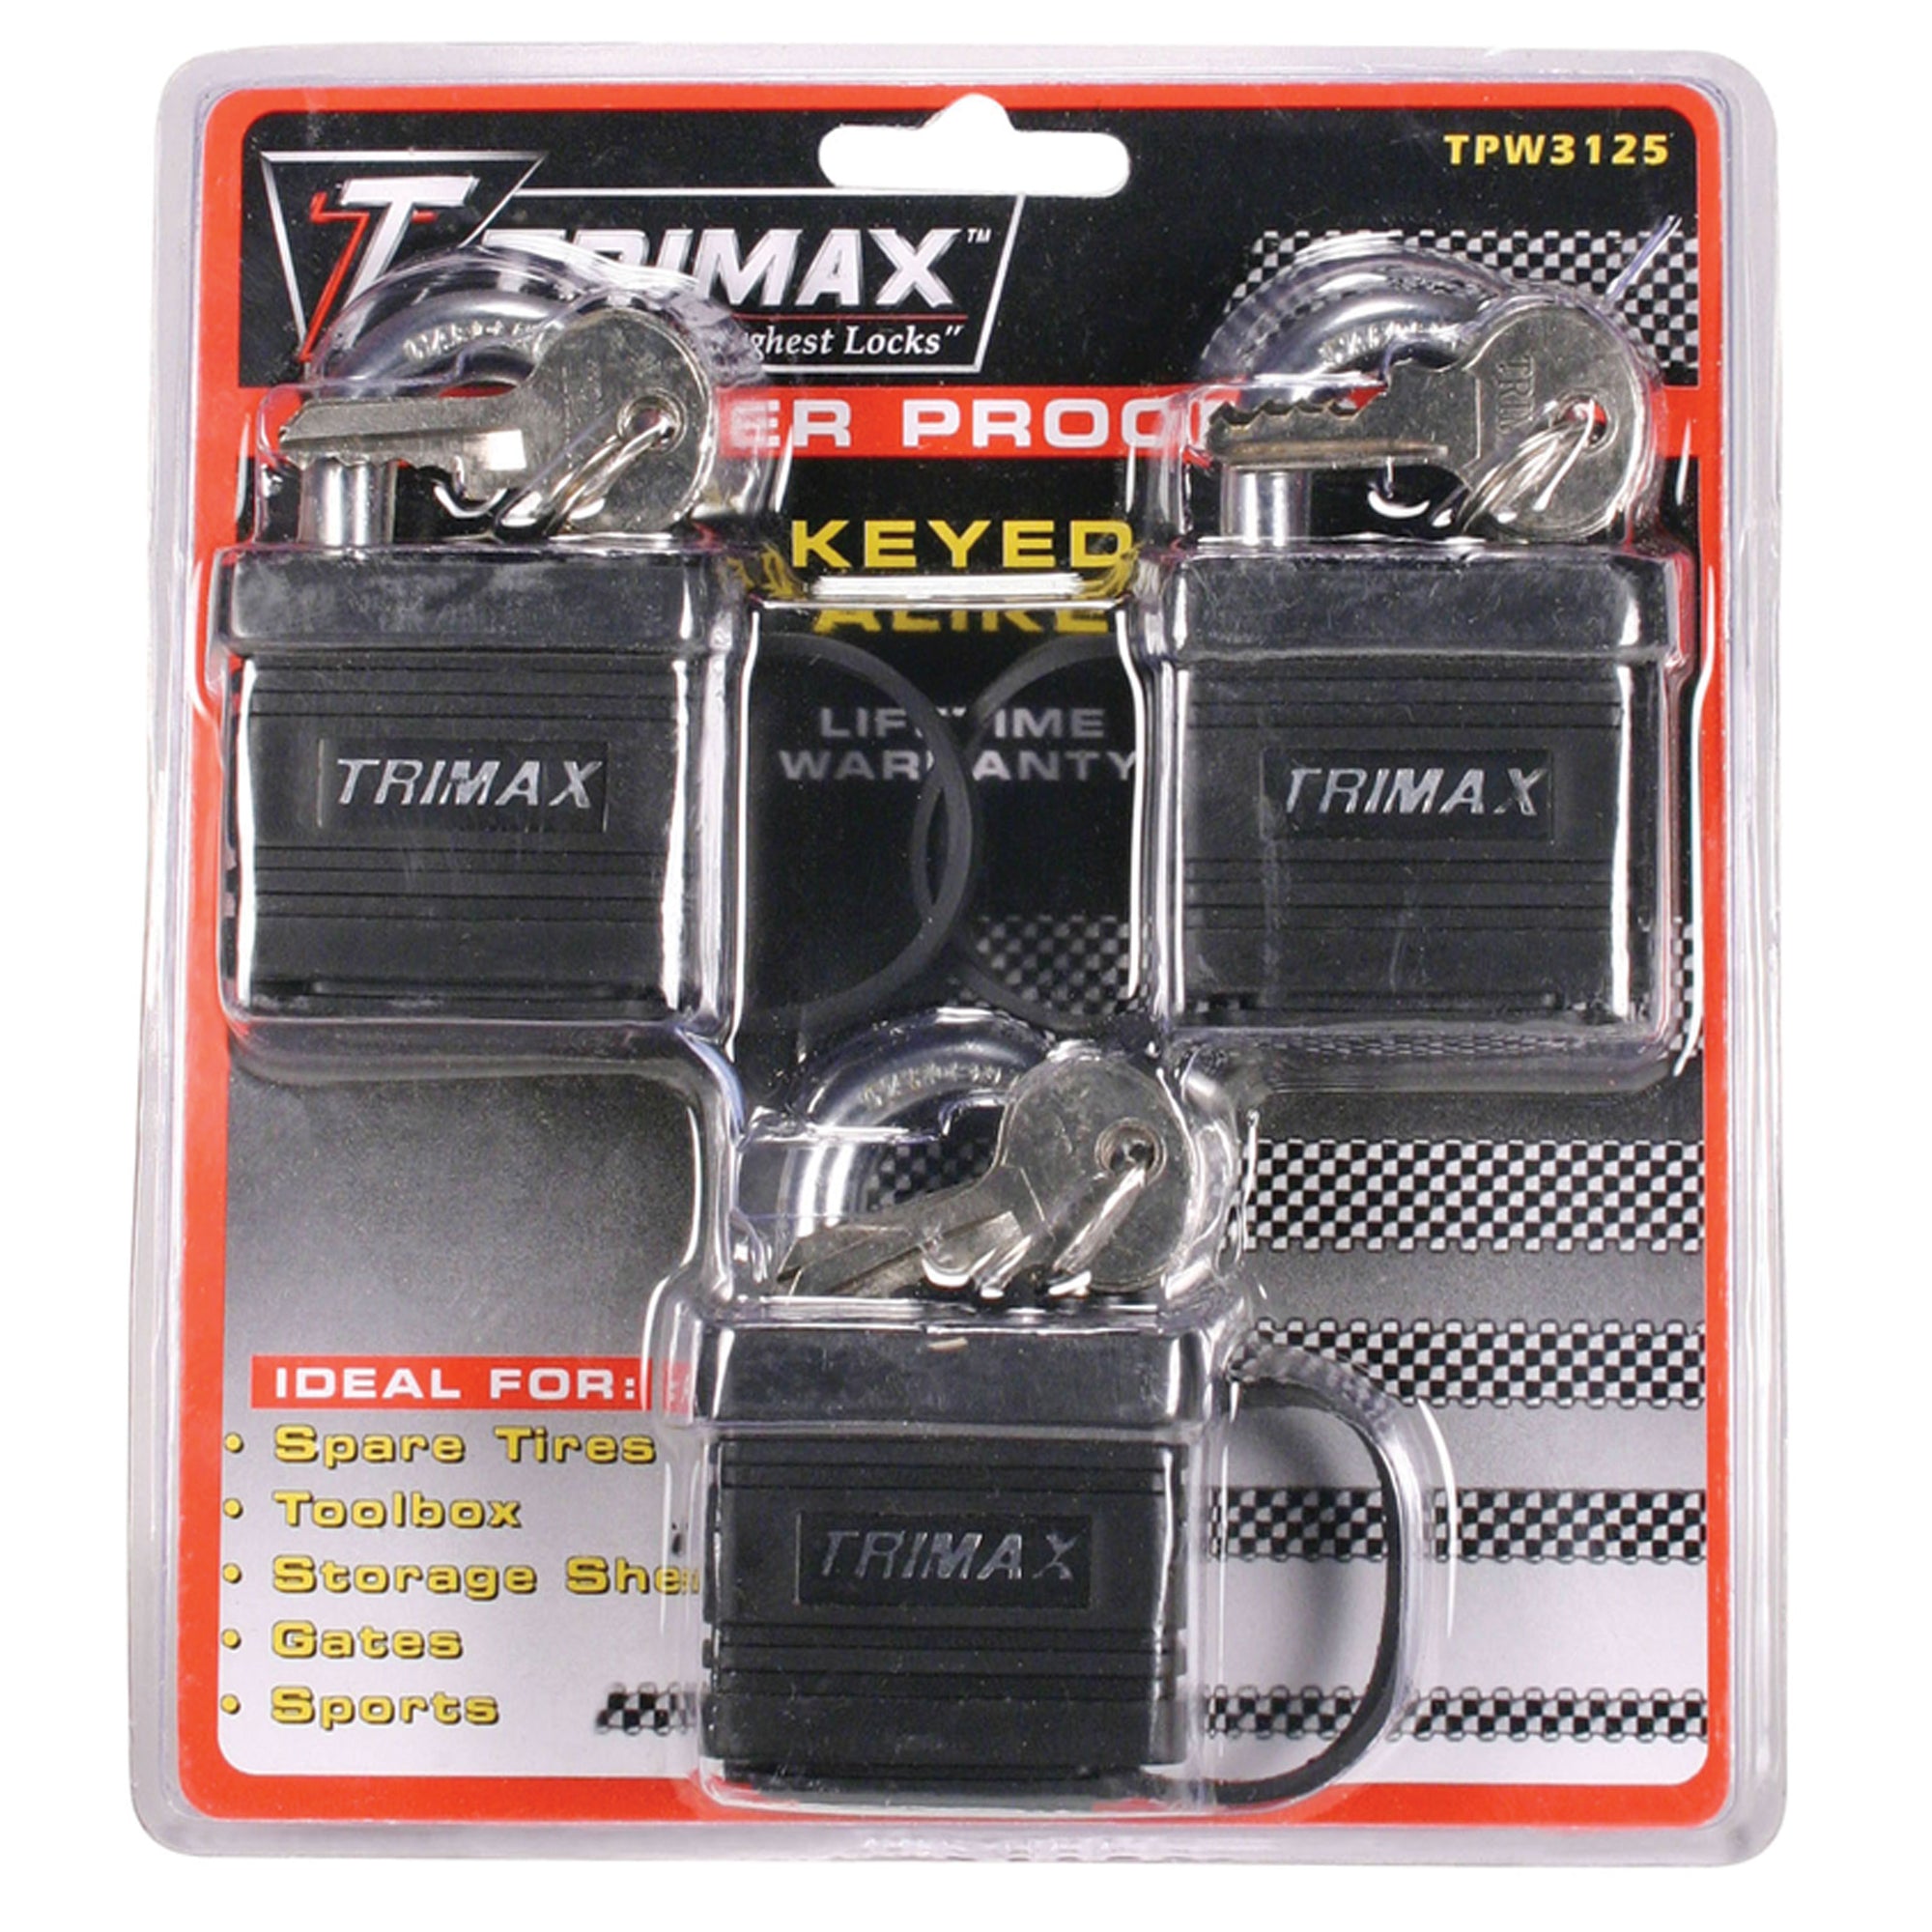 Trimax TPW3125 Weatherproof Keyed Alike Locks